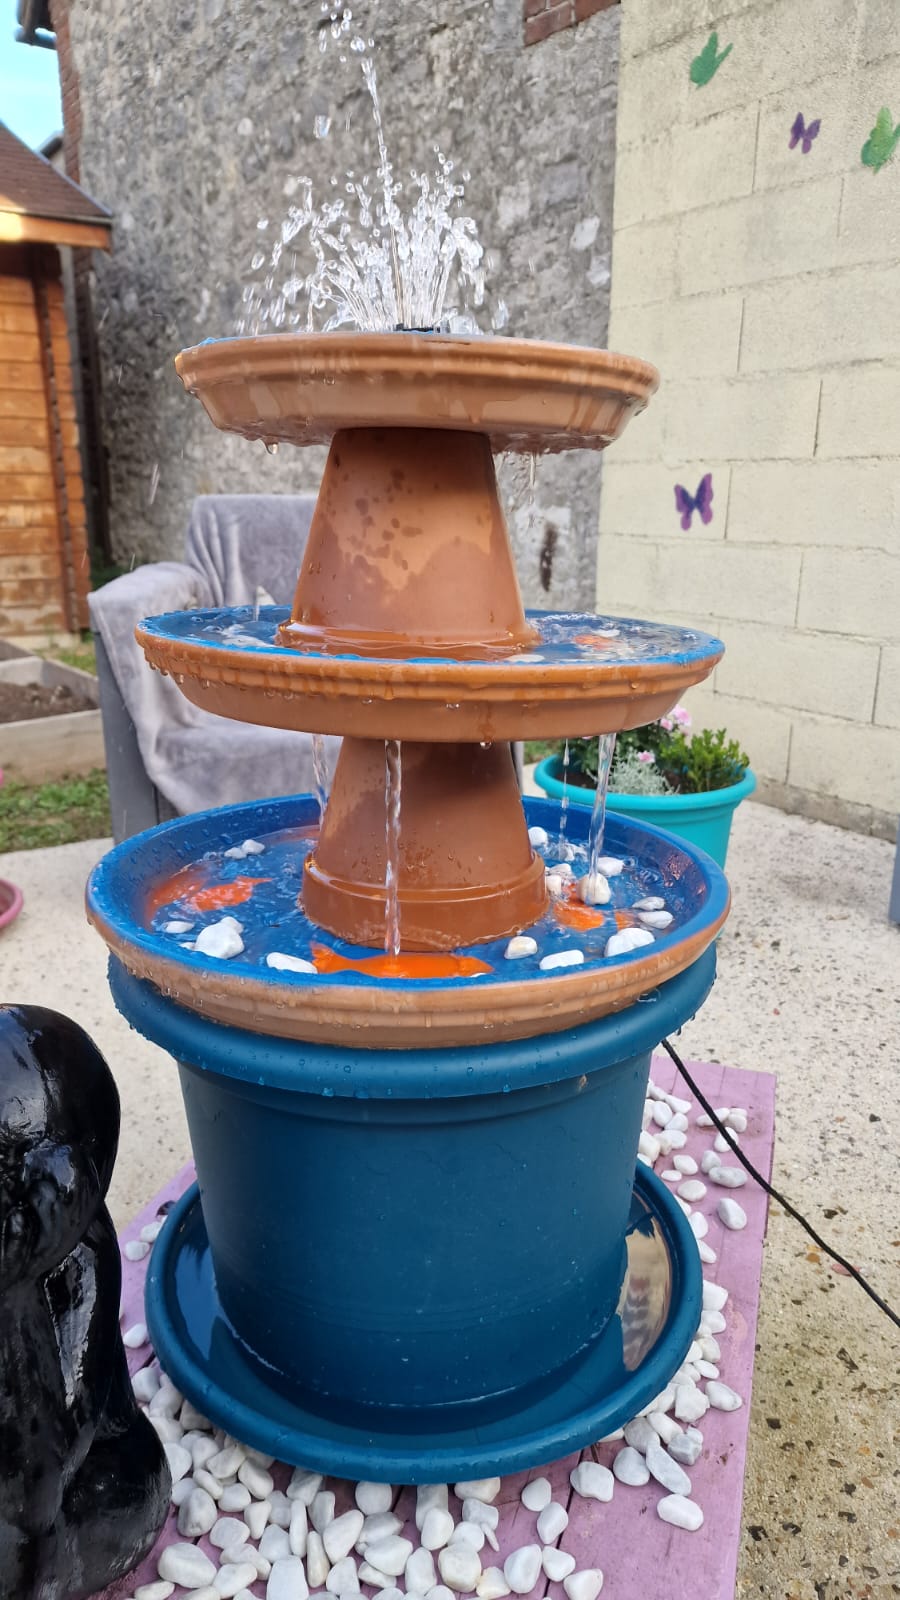 Fontaine à eau en pots de terre cuite - réalisation du Sésame pour le concours sur l'eau